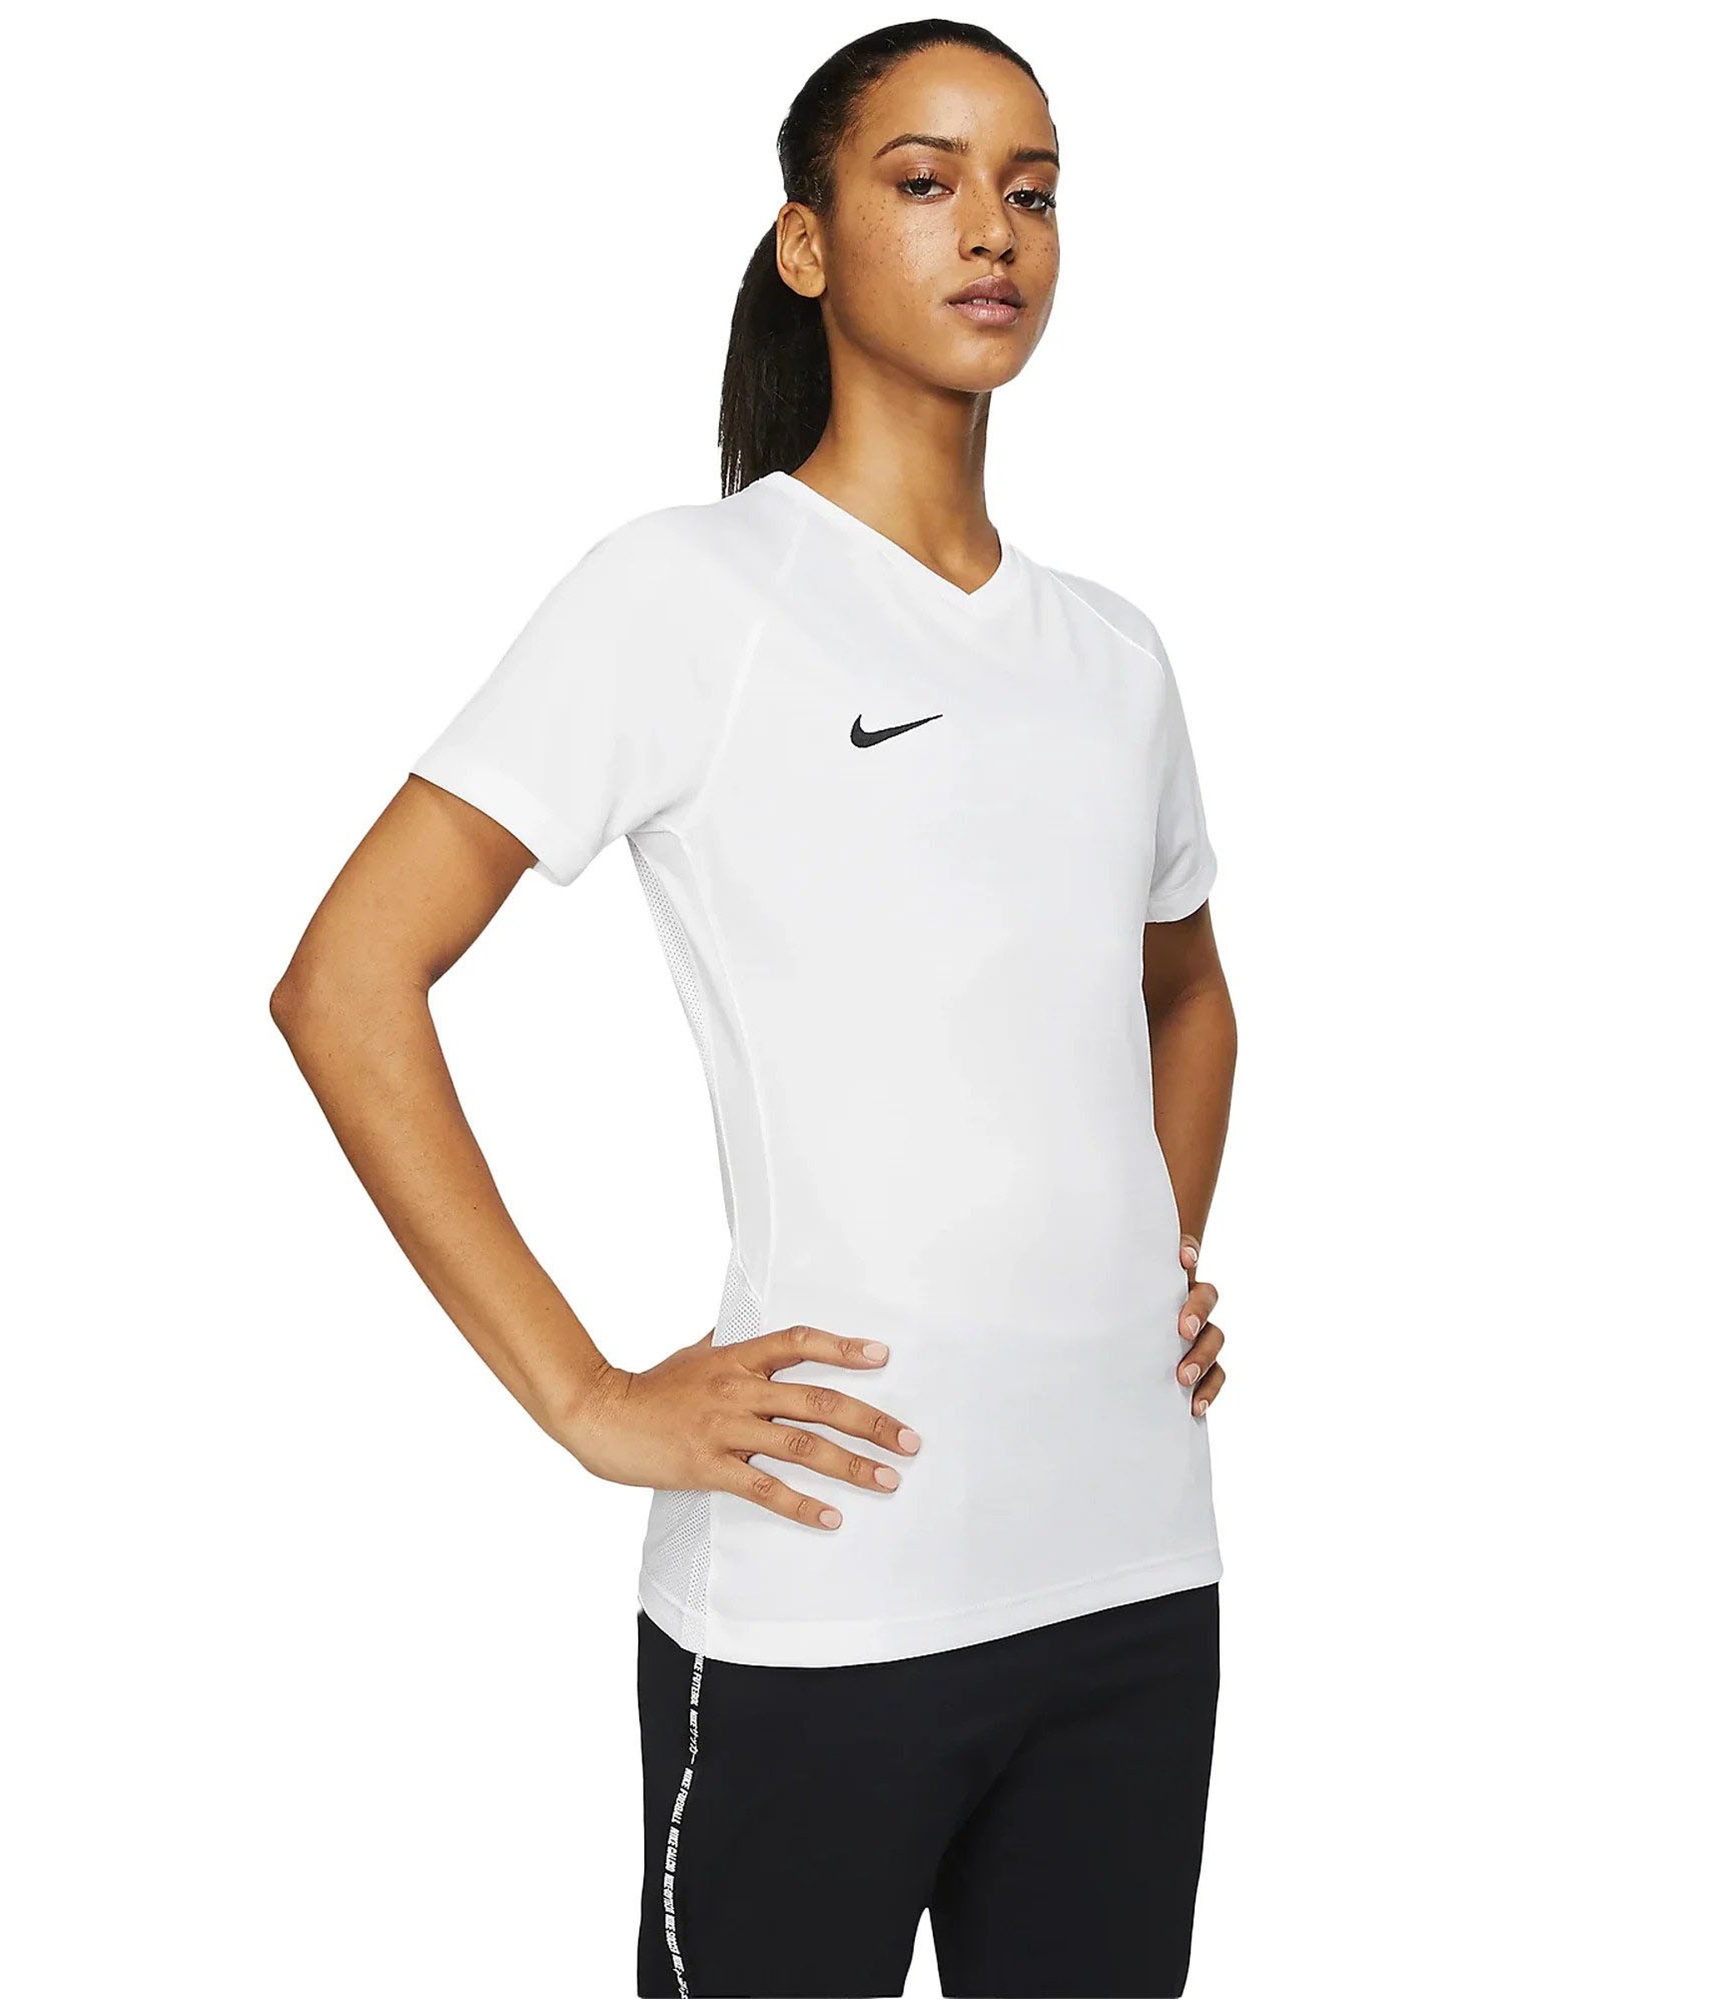 Nike Womens Tiempo Premier Soccer Jersey | eBay